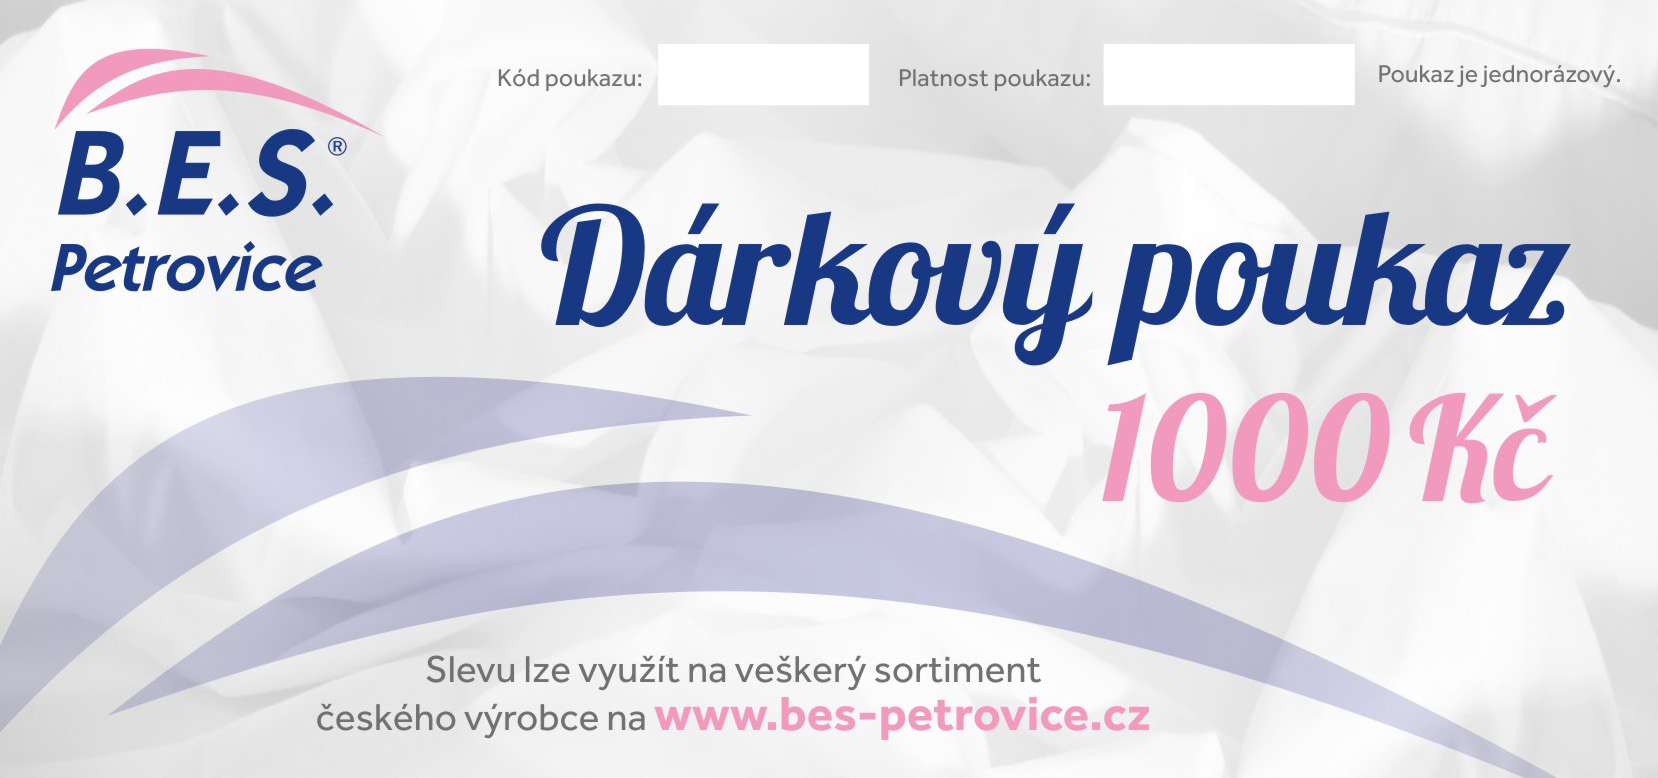 B.E.S. - Petrovice, s.r.o. Dárkový poukaz v hodnotě - 1000 Kč